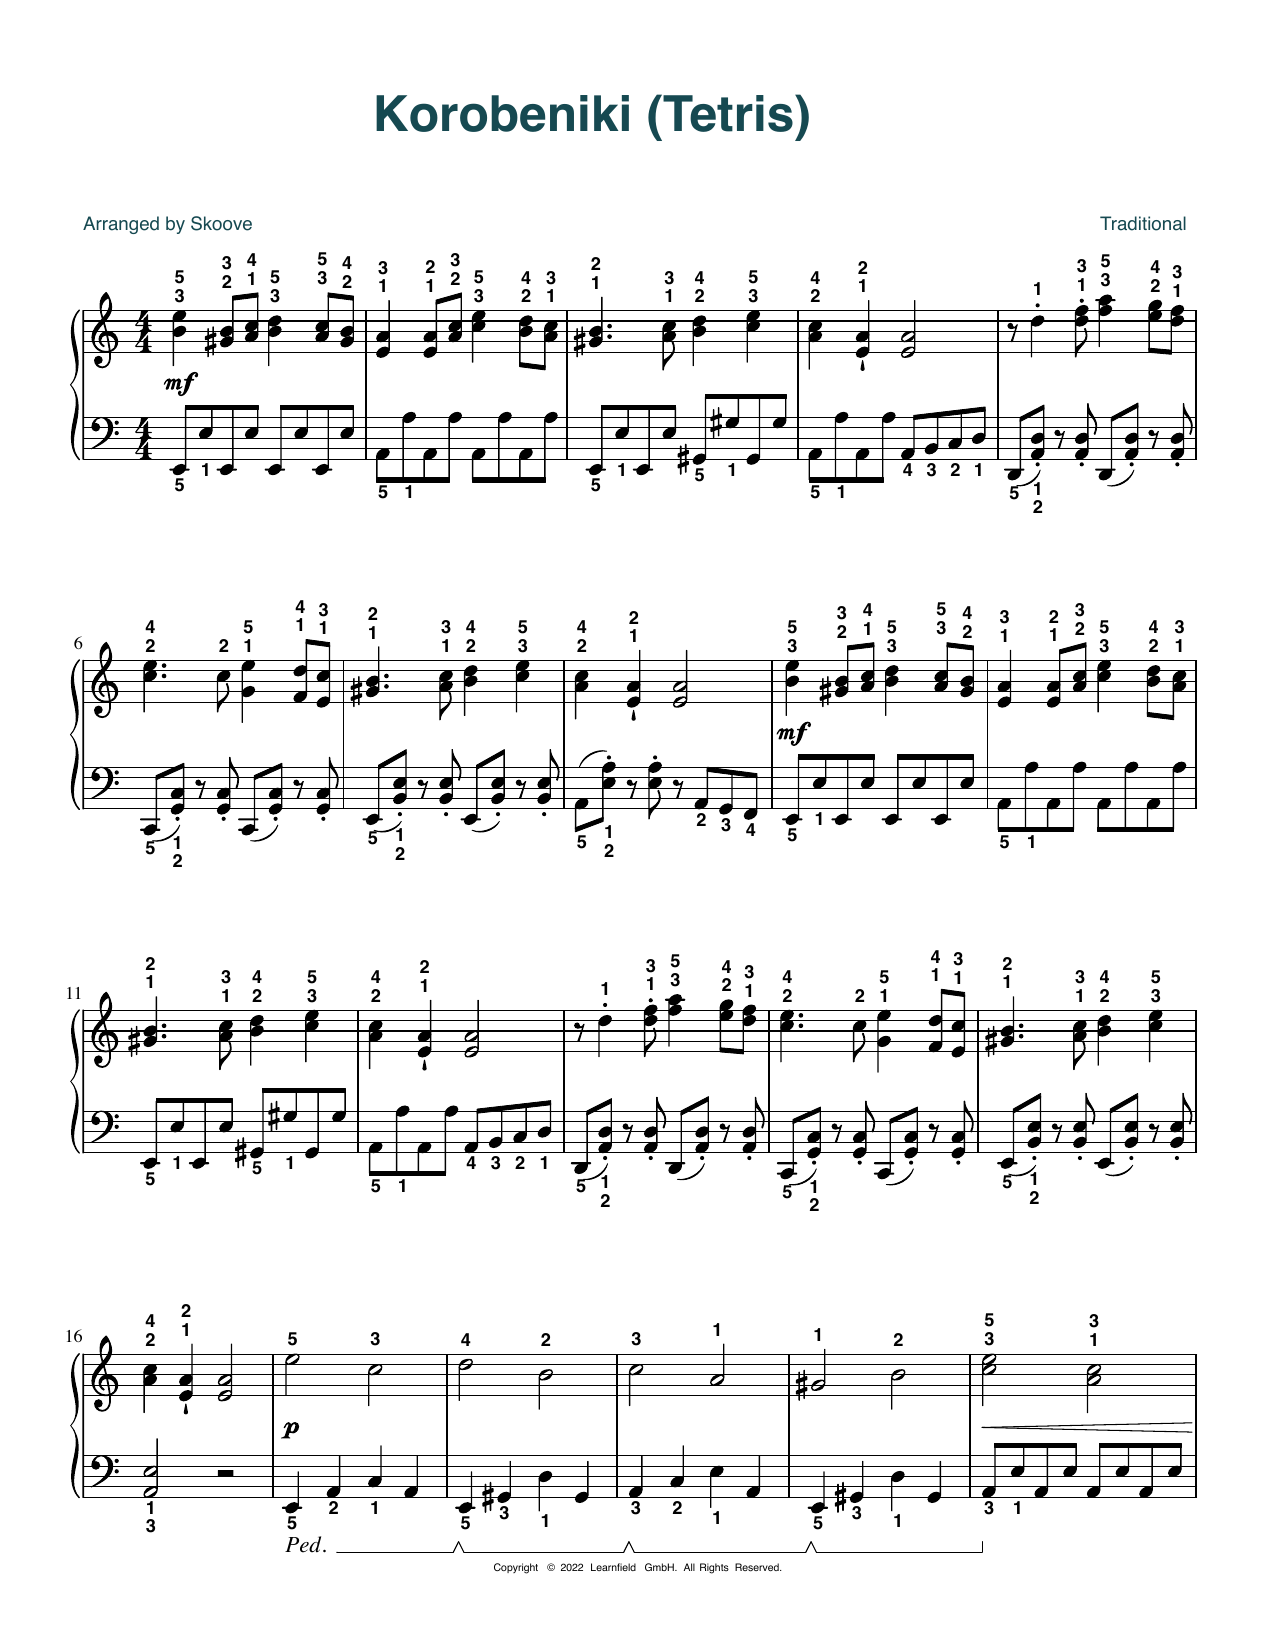 Download Traditional Korobeniki (Tetris) (arr. Skoove) Sheet Music